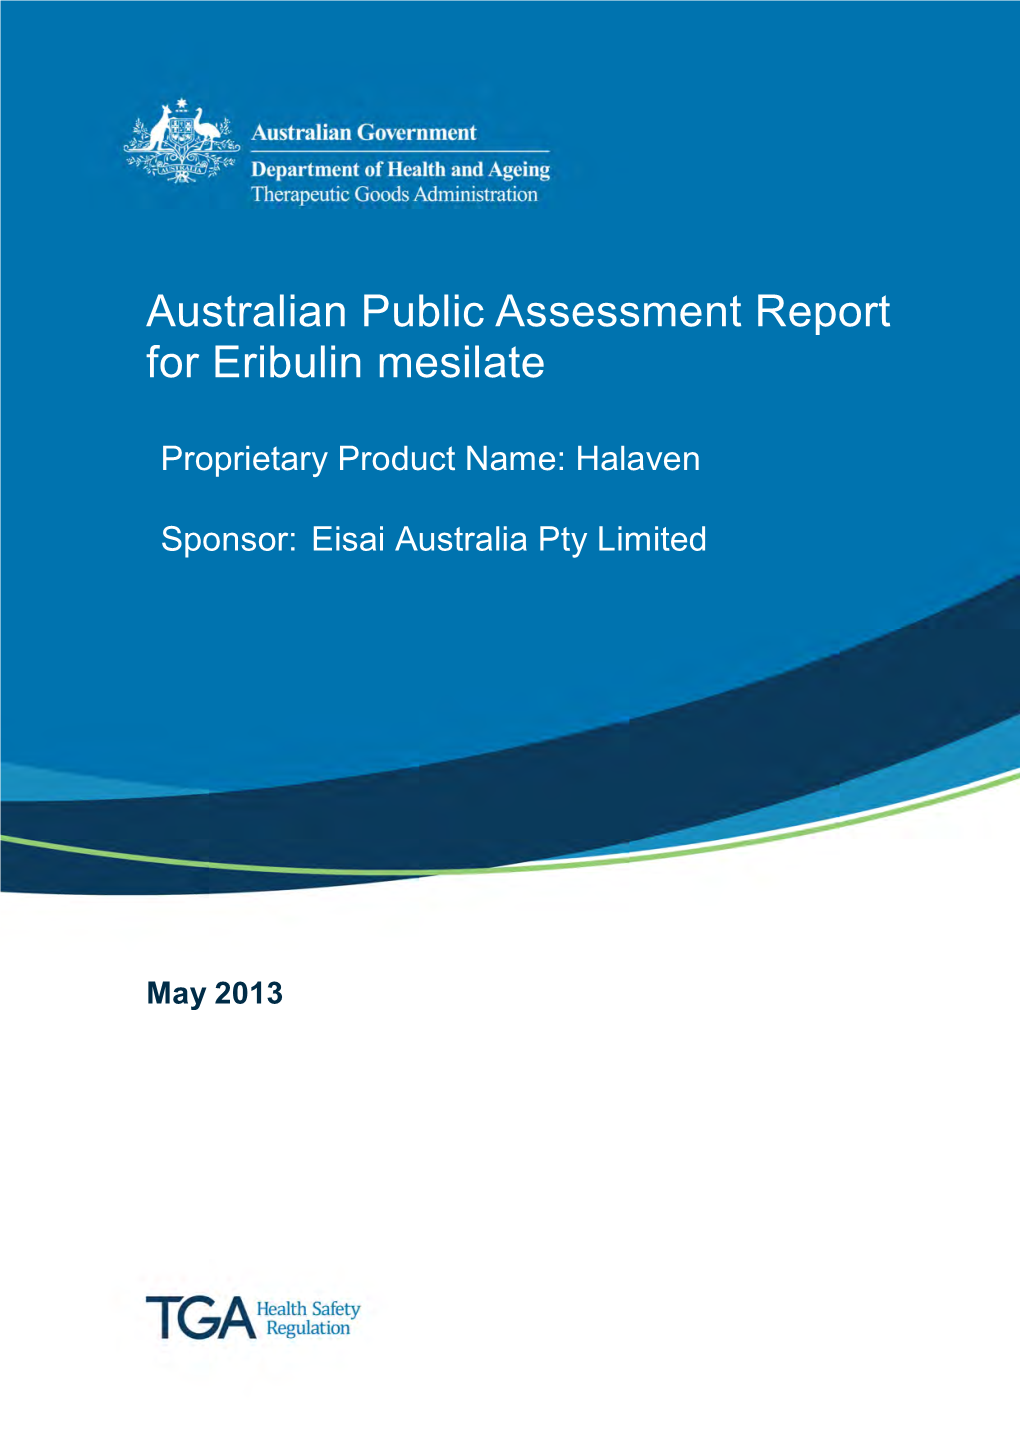 Australian Public Assessment for Eribulin Mesilate